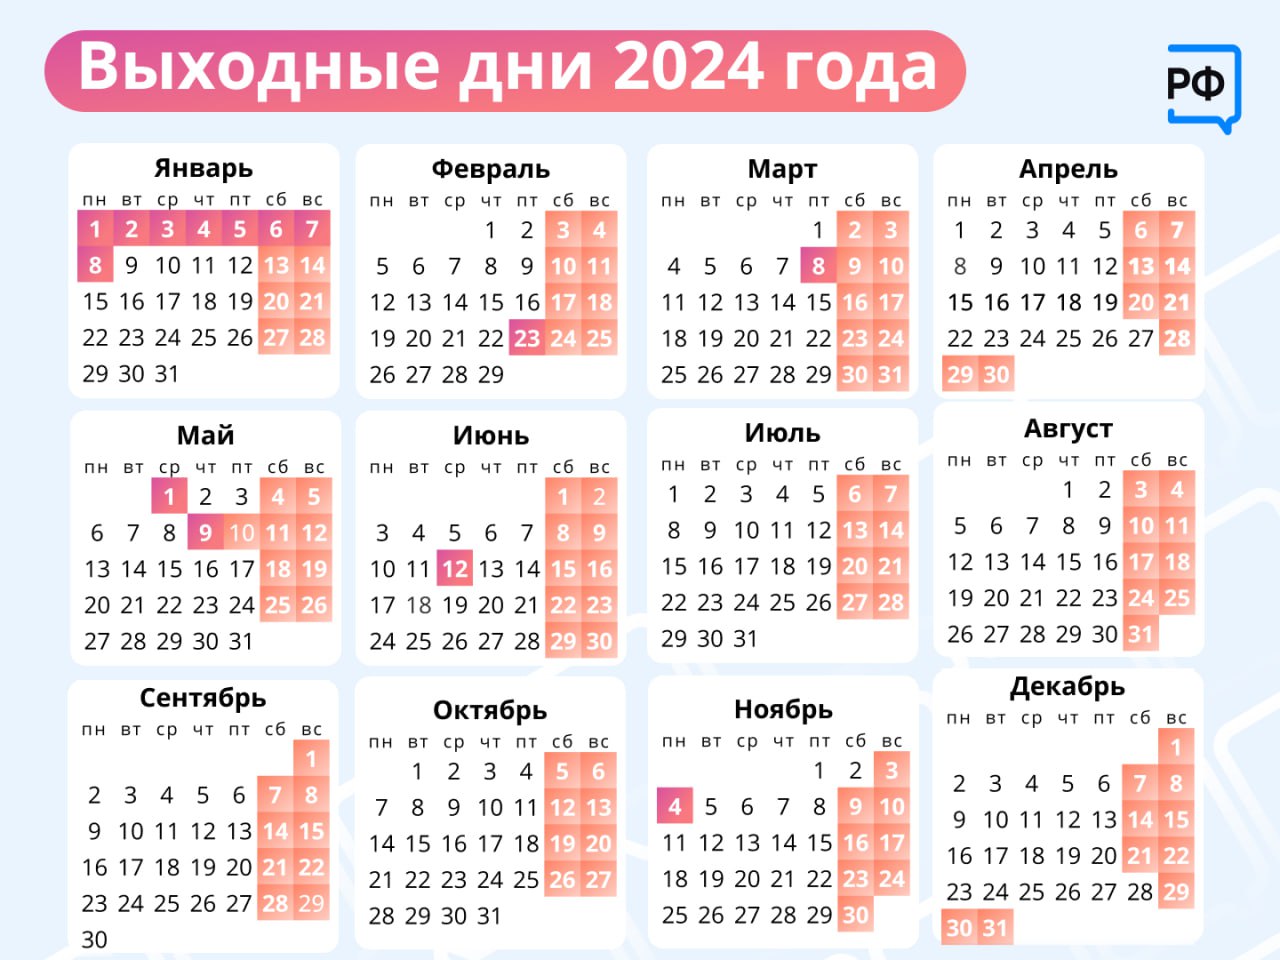 Календарь выходных дней на 2024 год: как будем отдыхать в январе и на  майские праздники